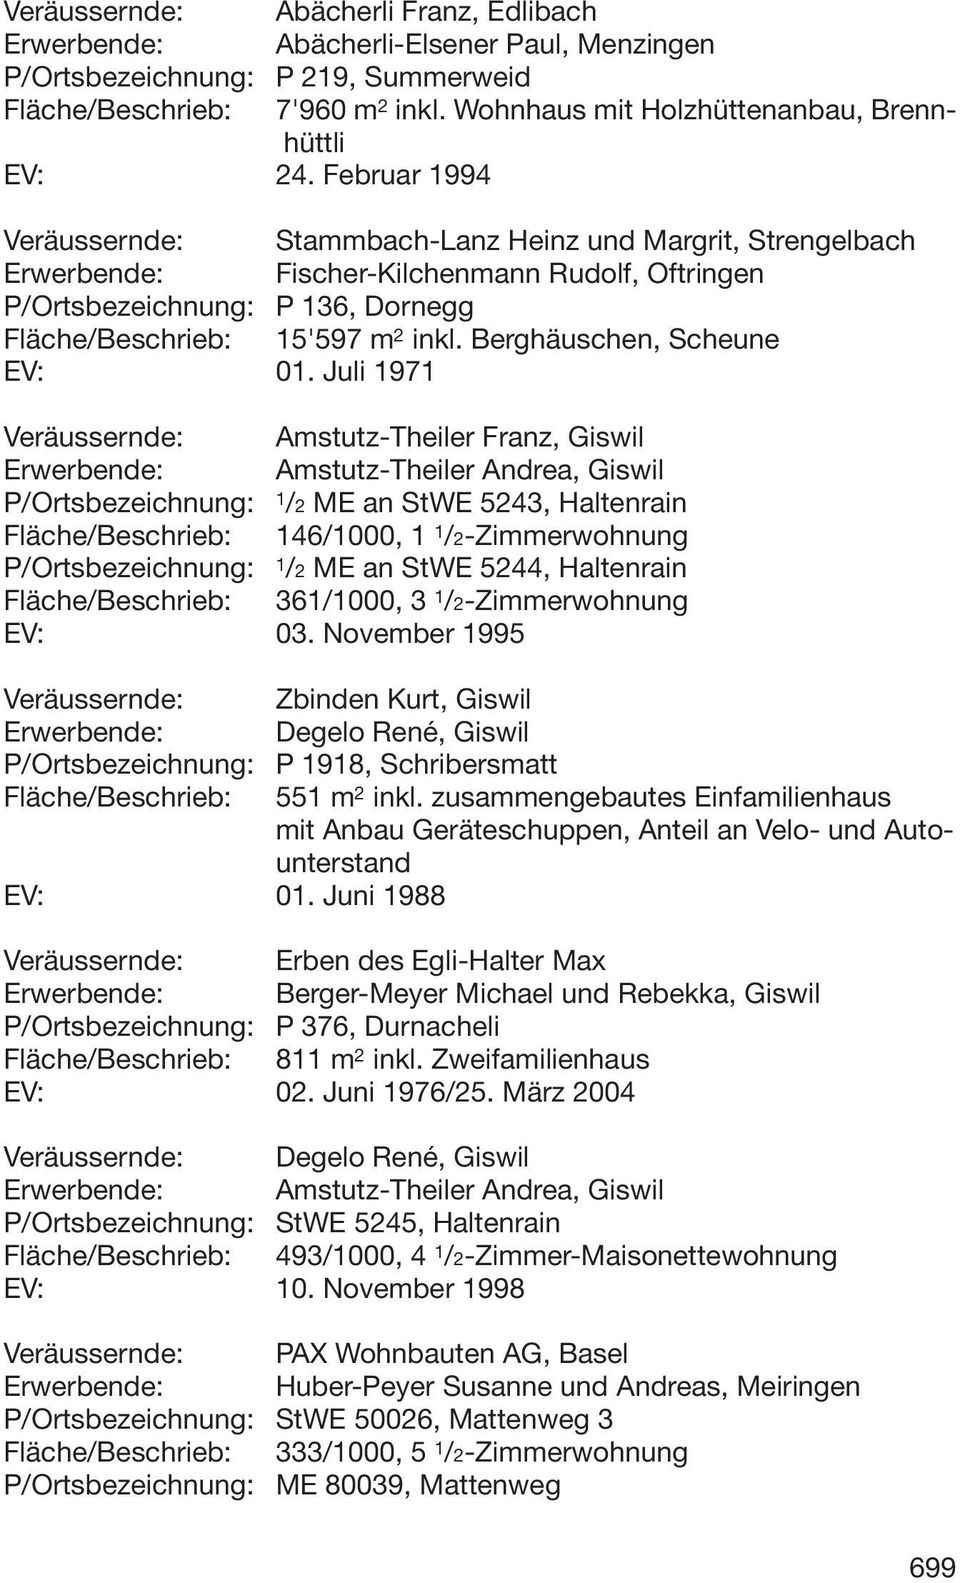 Februar 1994 Veräussernde: Stammbach-Lanz Heinz und Margrit, Strengelbach Erwerbende: Fischer-Kilchenmann Rudolf, Oftringen P/Ortsbezeichnung: P 136, Dornegg Fläche/Beschrieb: 15'597 m 2 inkl.